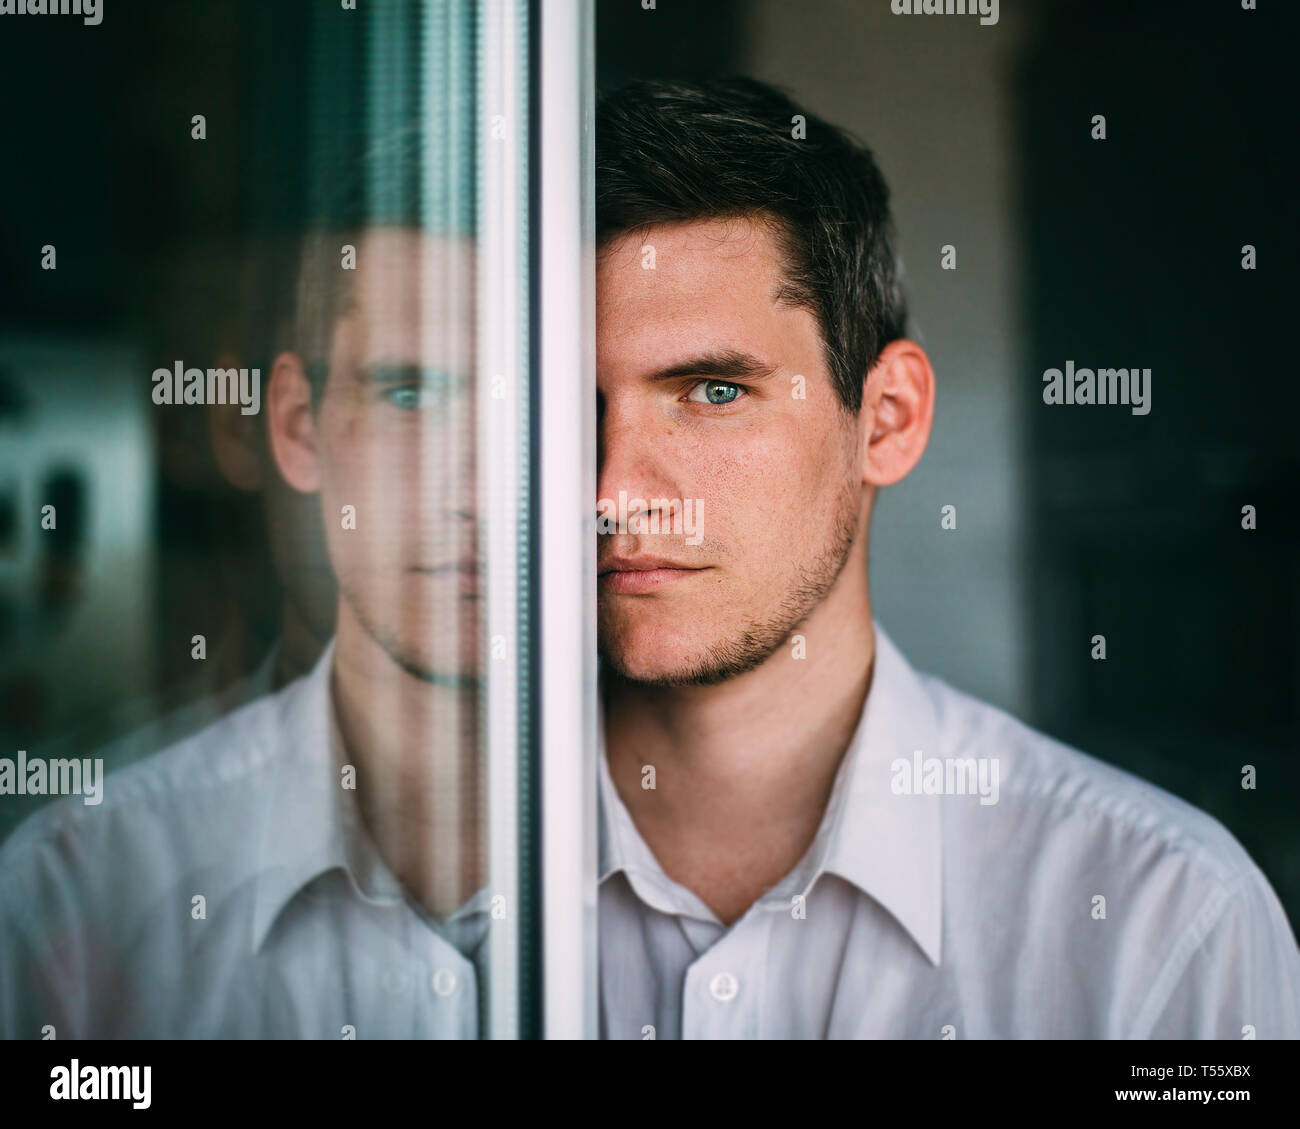 Portrait of man looking around glass door Stock Photo